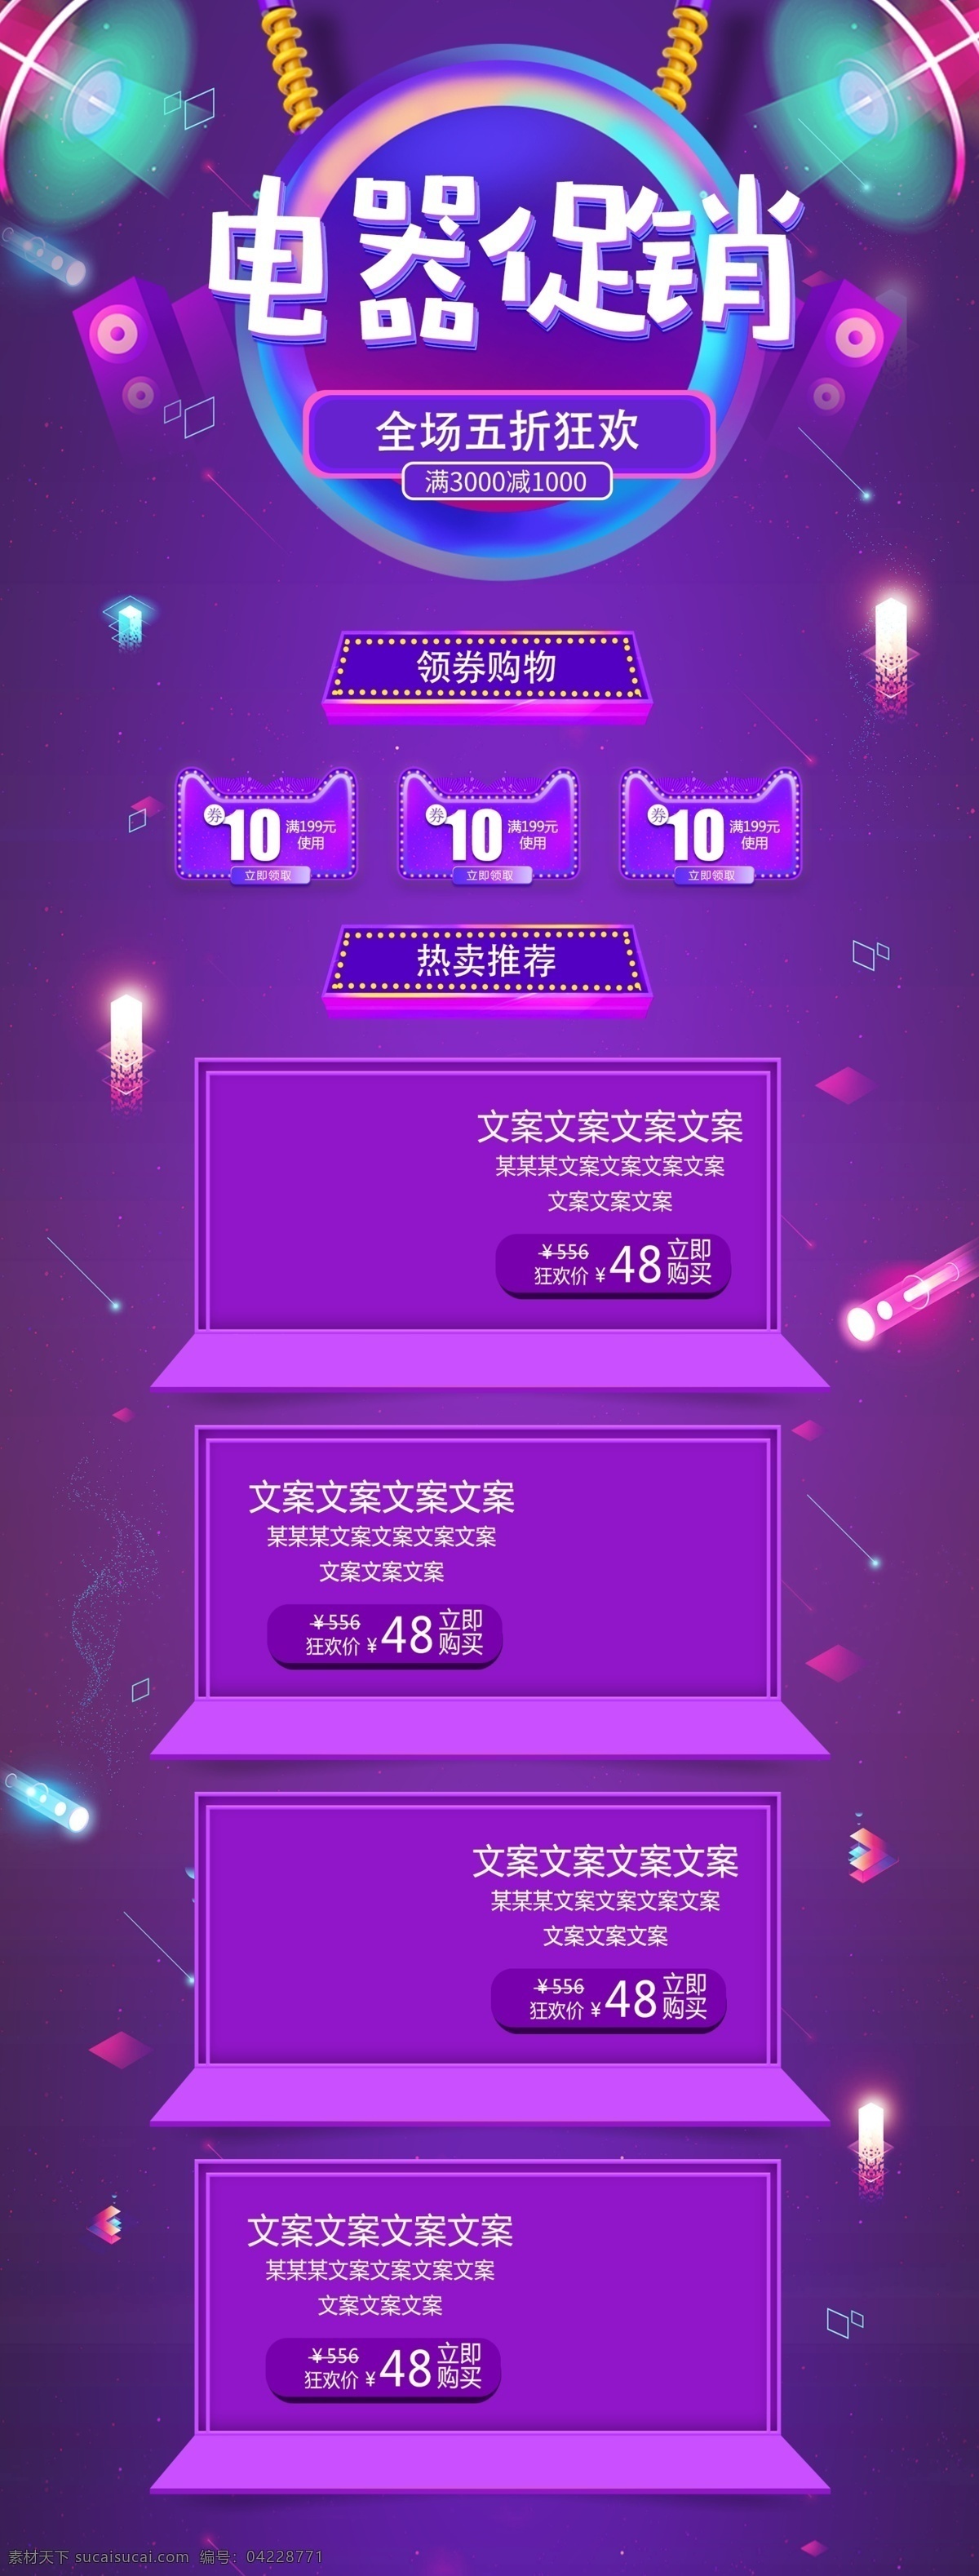 紫色 炫 酷 数码 电器 促销 五 折 钜 惠 淘宝 首页 炫酷 五折 数码电器